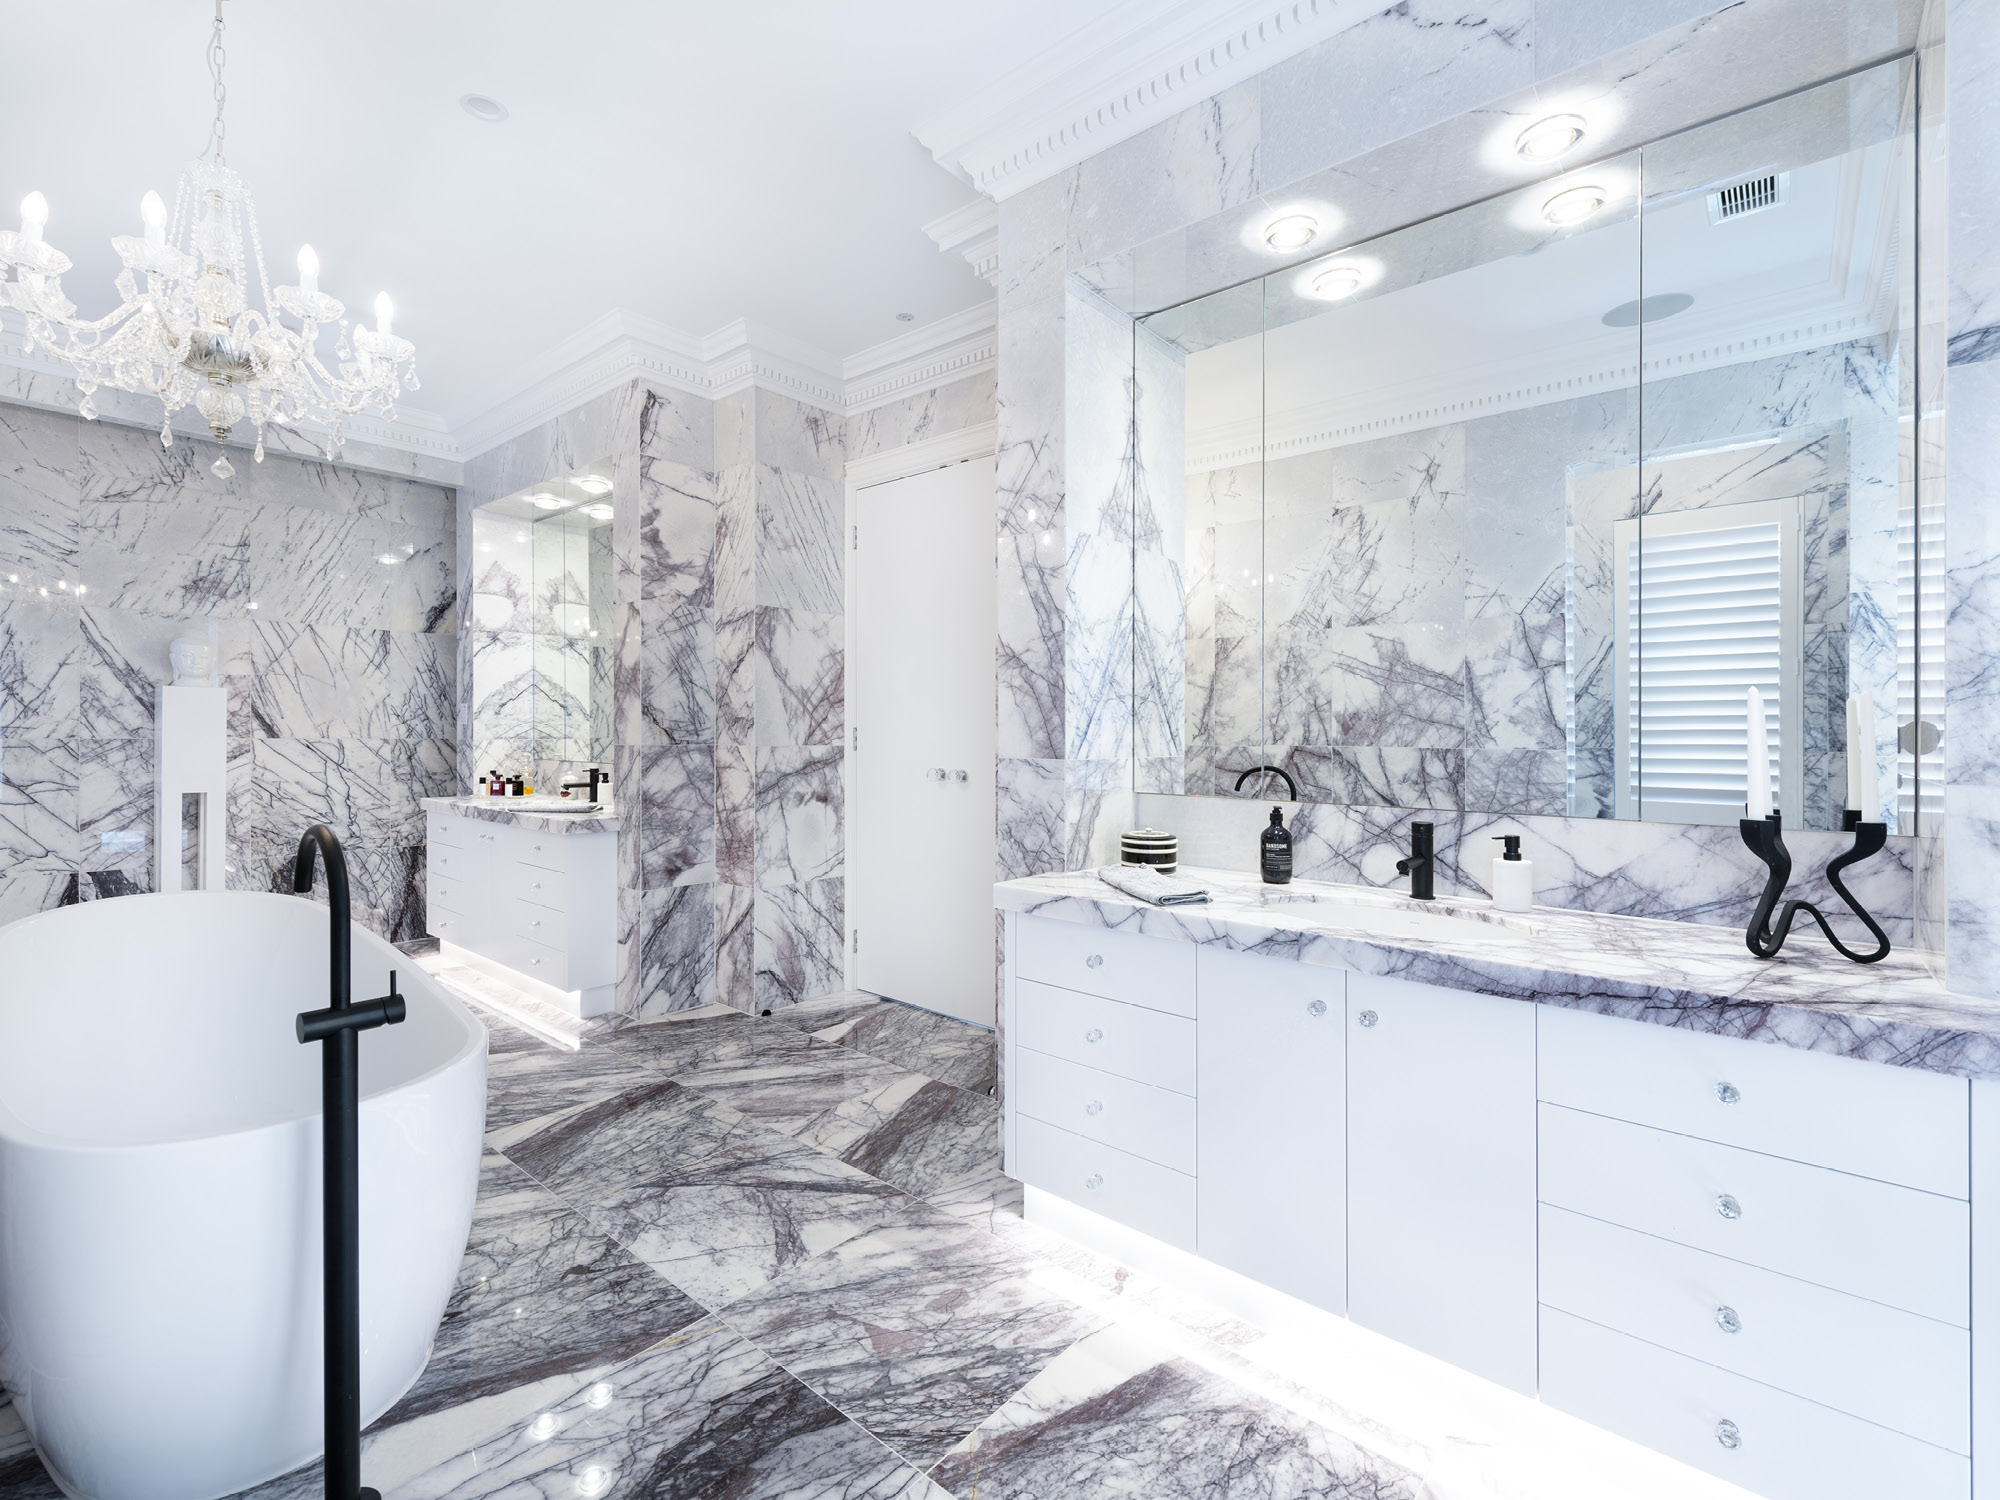 An elaborately tiled marble bathroom.